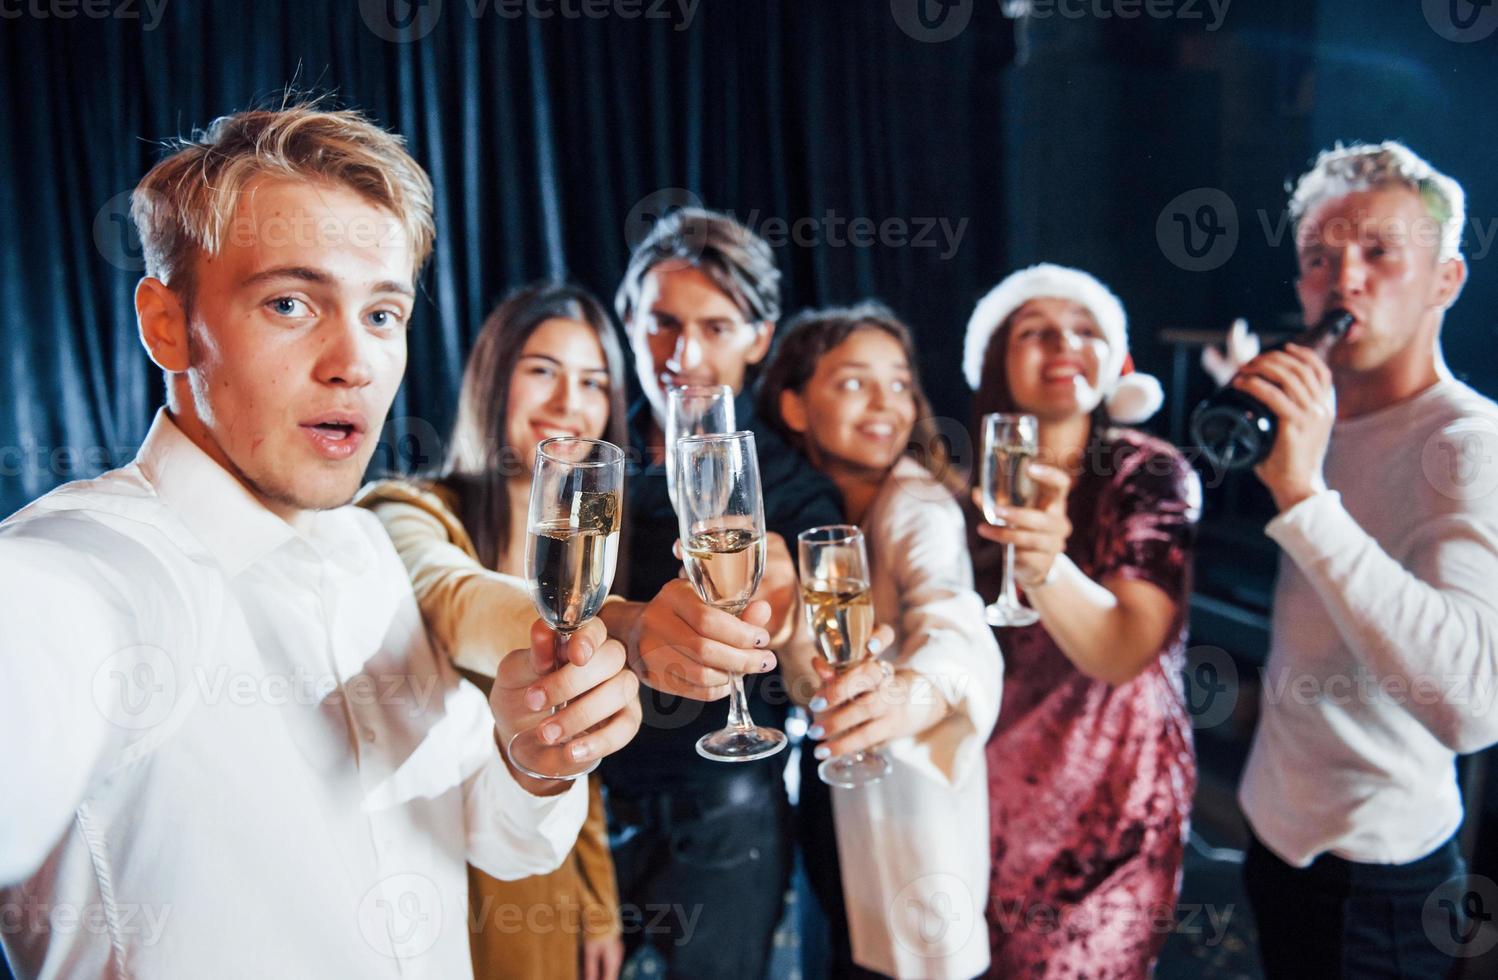 prend un selfie. groupe d'amis joyeux célébrant le nouvel an à l'intérieur avec des boissons dans les mains photo